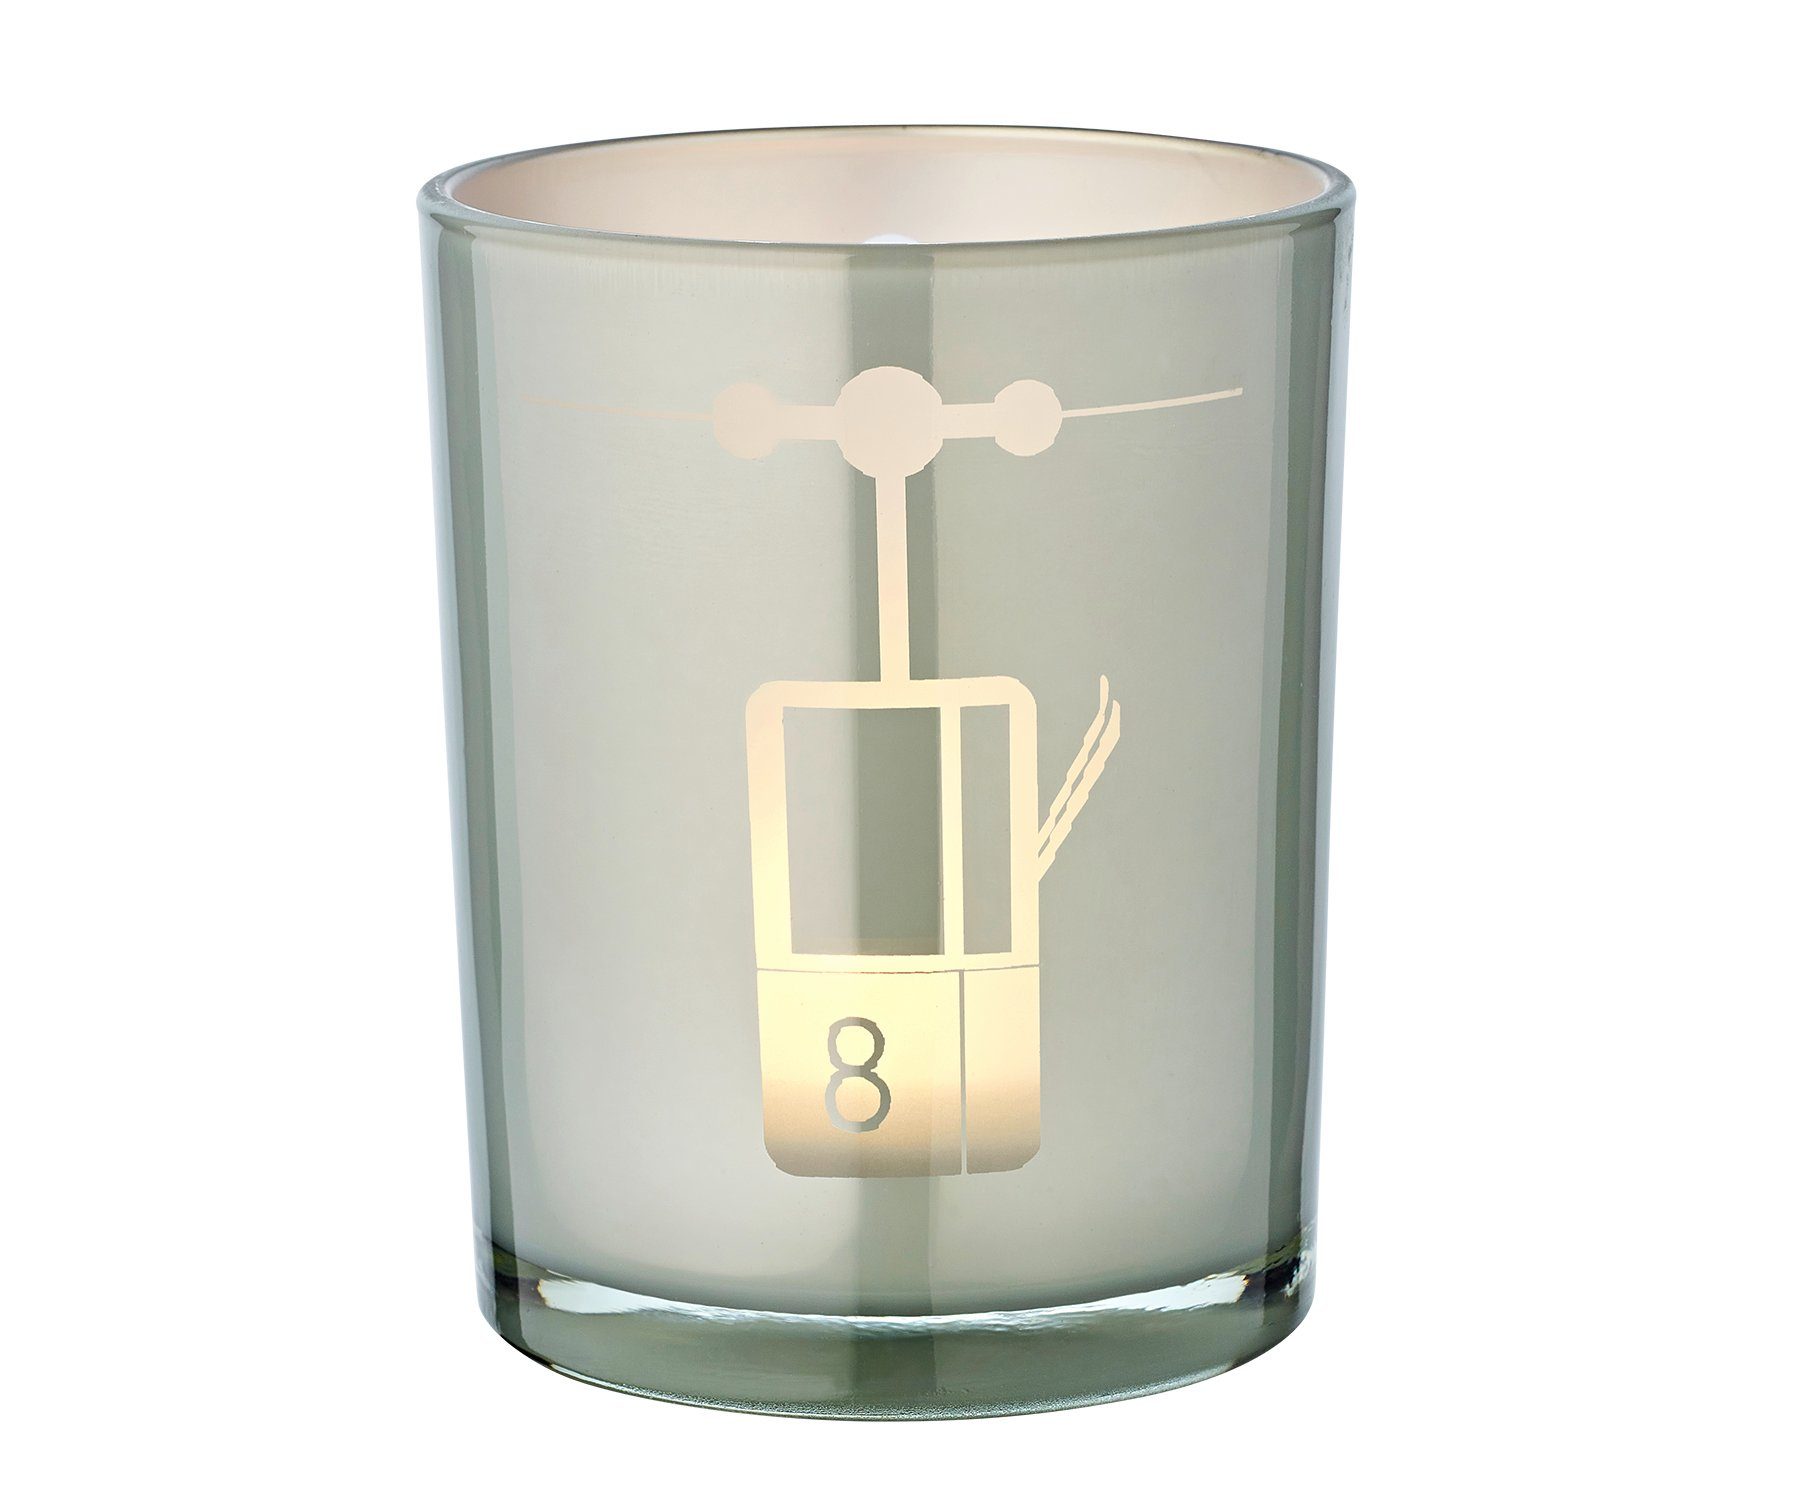 EDZARD Windlicht Lift, Windlicht, Kerzenglas mit Lift-Motiv in Grau-Weiß, Teelichtglas für Teelichter, Höhe 13 cm, Ø 10 cm